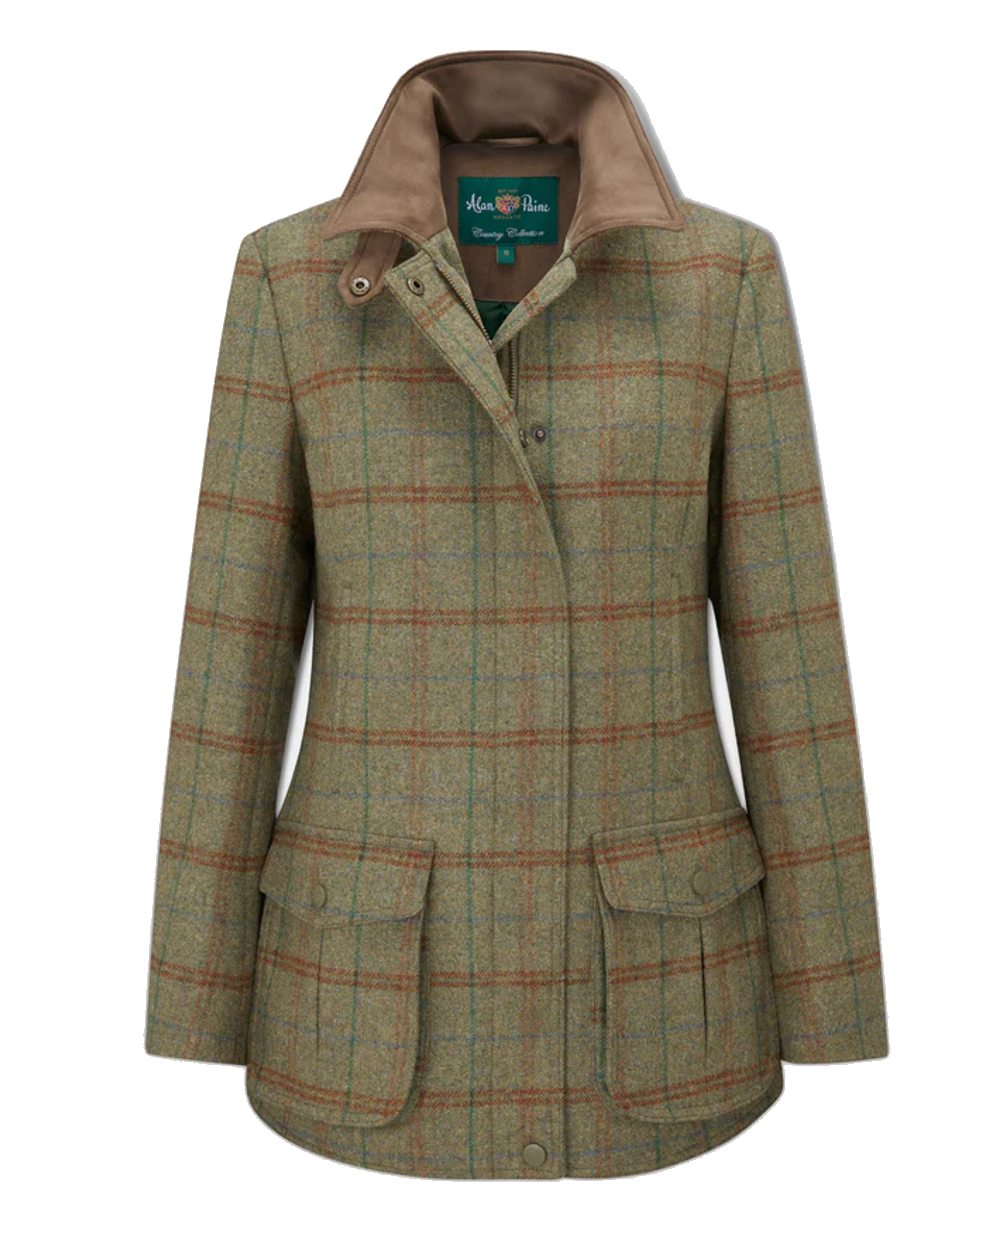 Alan Paine Surrey Tweed Coat in Clover 